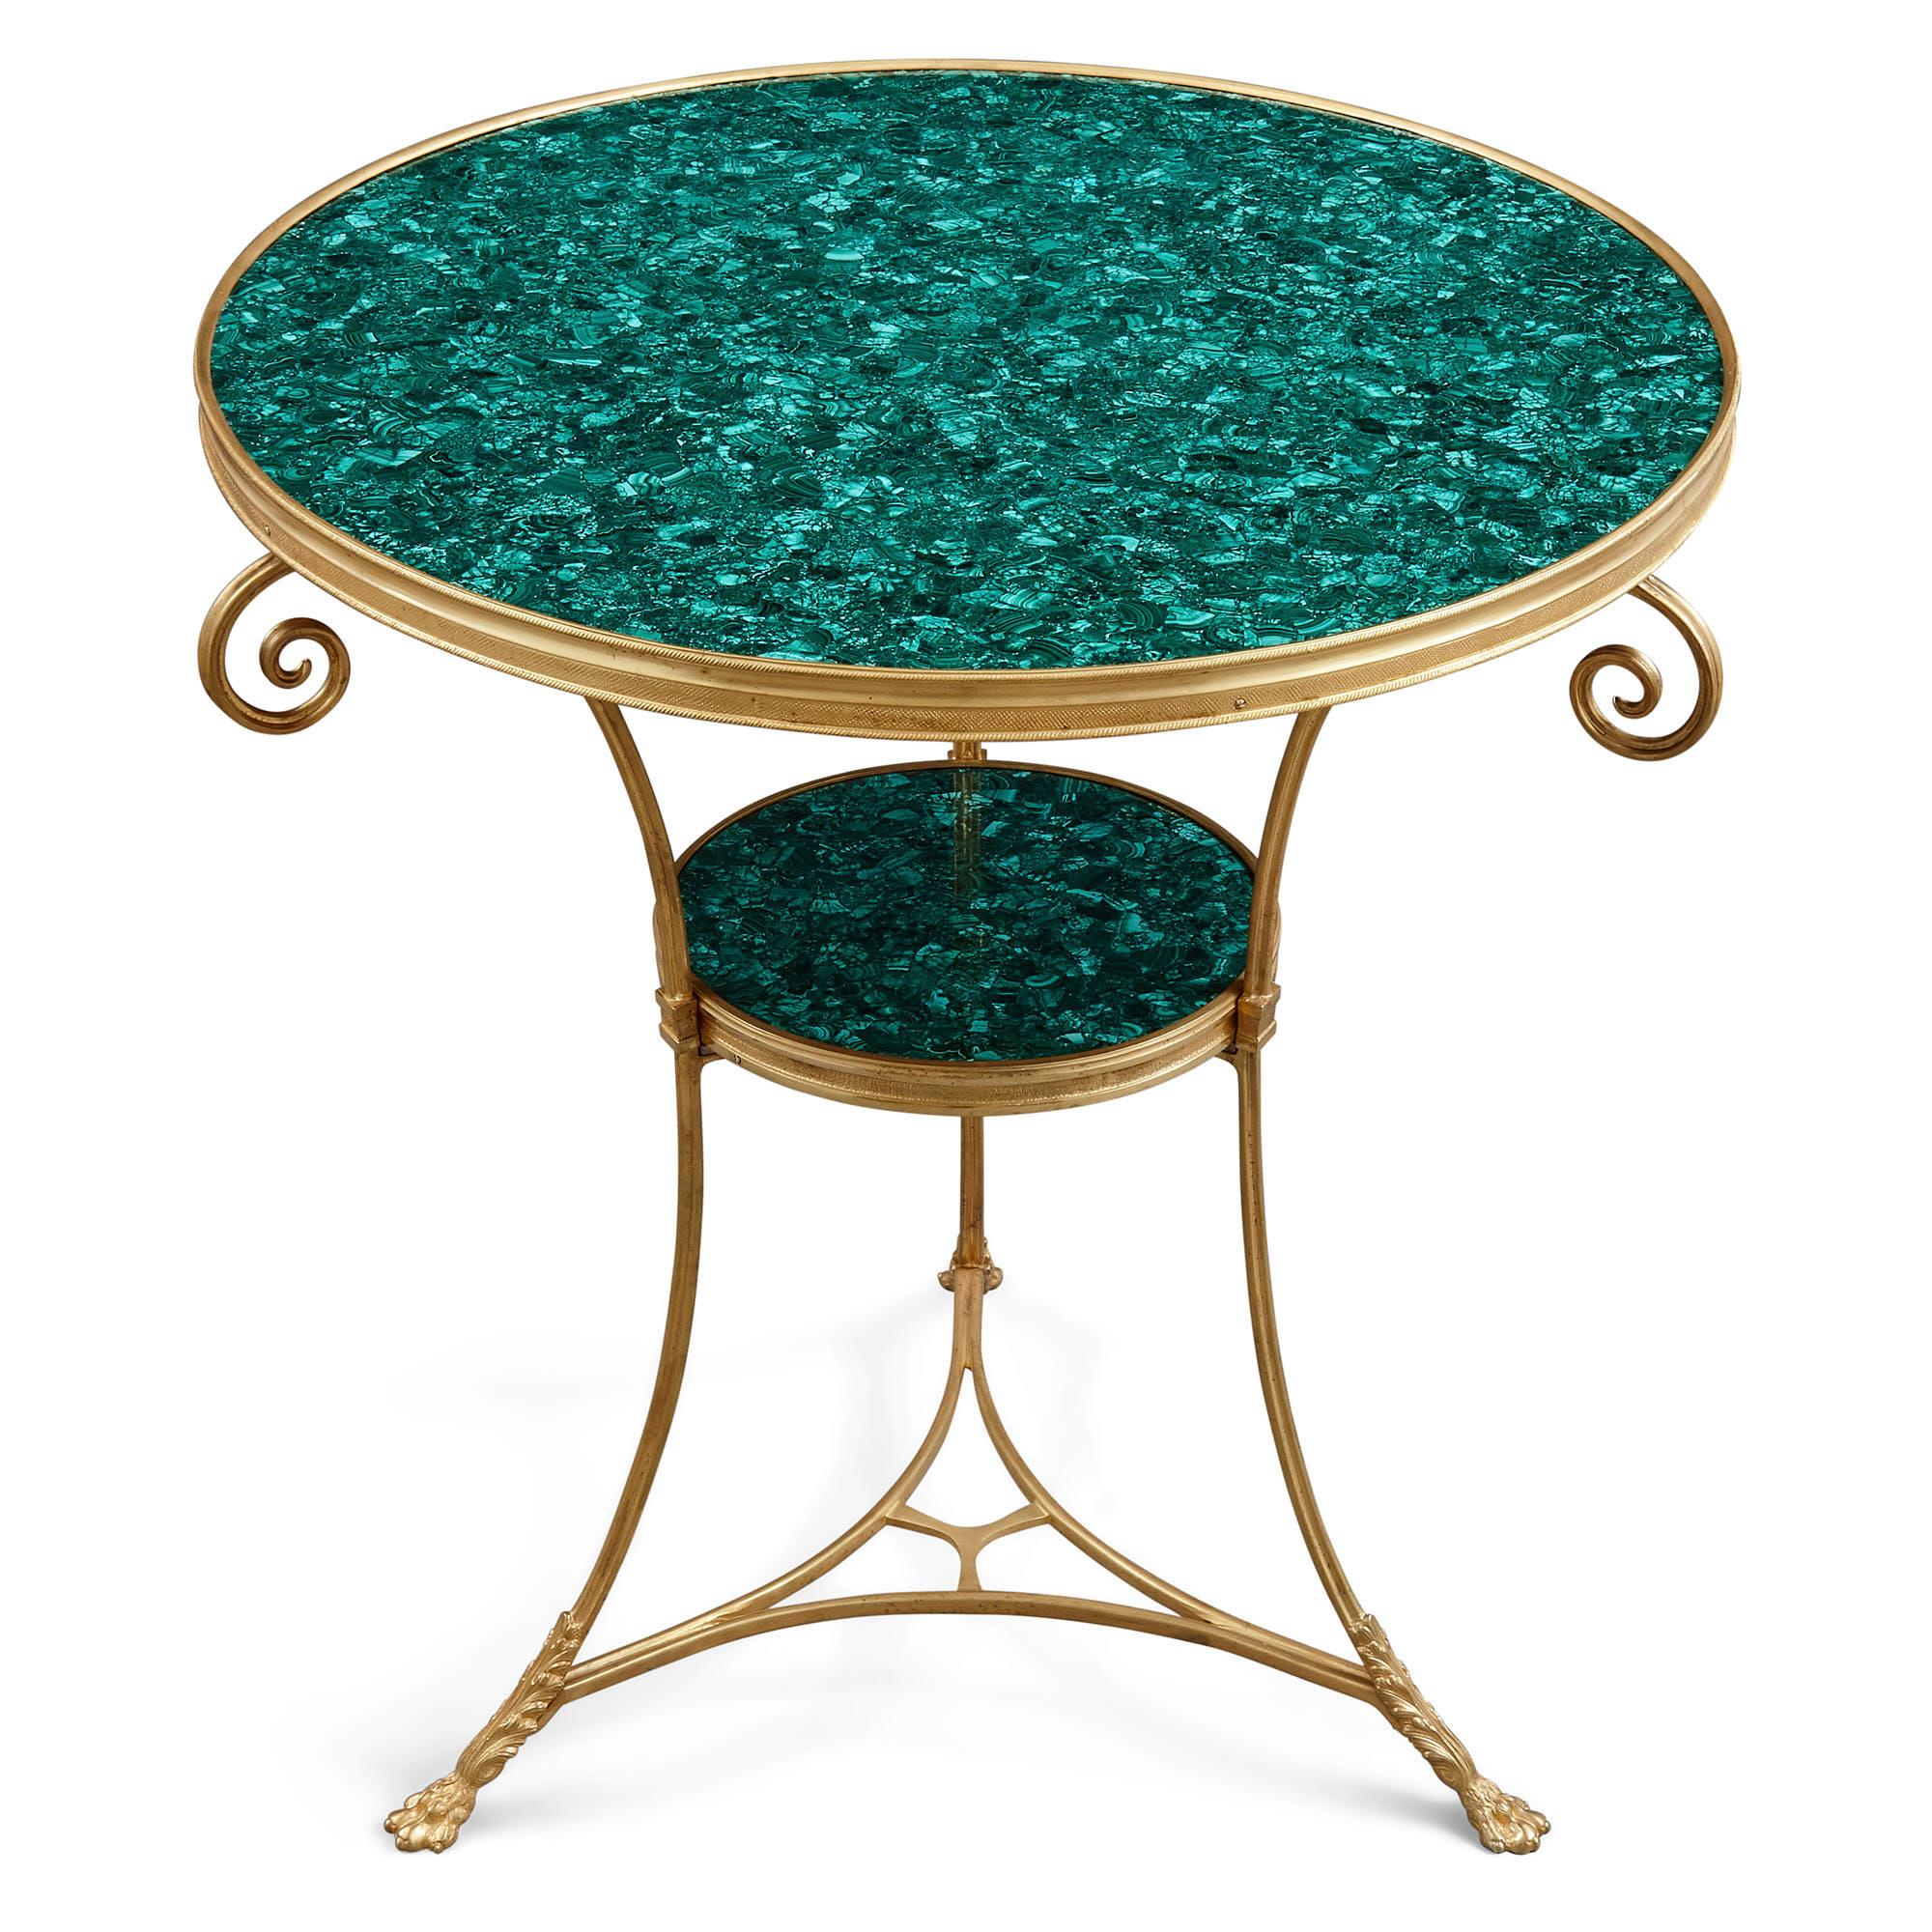 Deux tables d'appoint circulaires françaises en malachite et bronze doré 
Français, vers 1900 
Hauteur 69 cm, diamètre 62 cm 

Ces élégantes tables d'appoint circulaires (en français : 